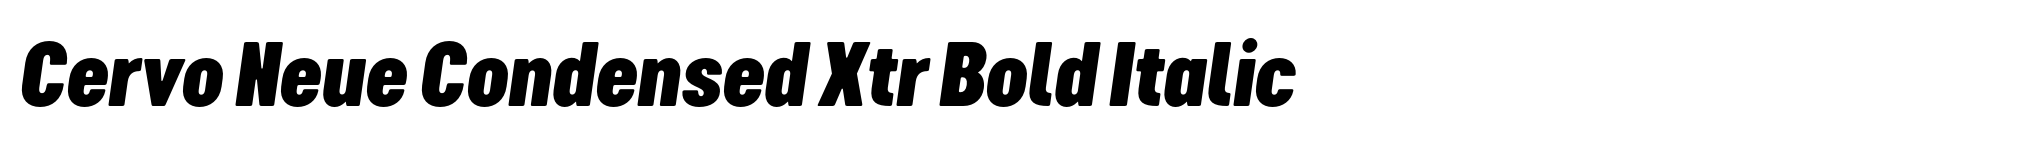 Cervo Neue Condensed Xtr Bold Italic image